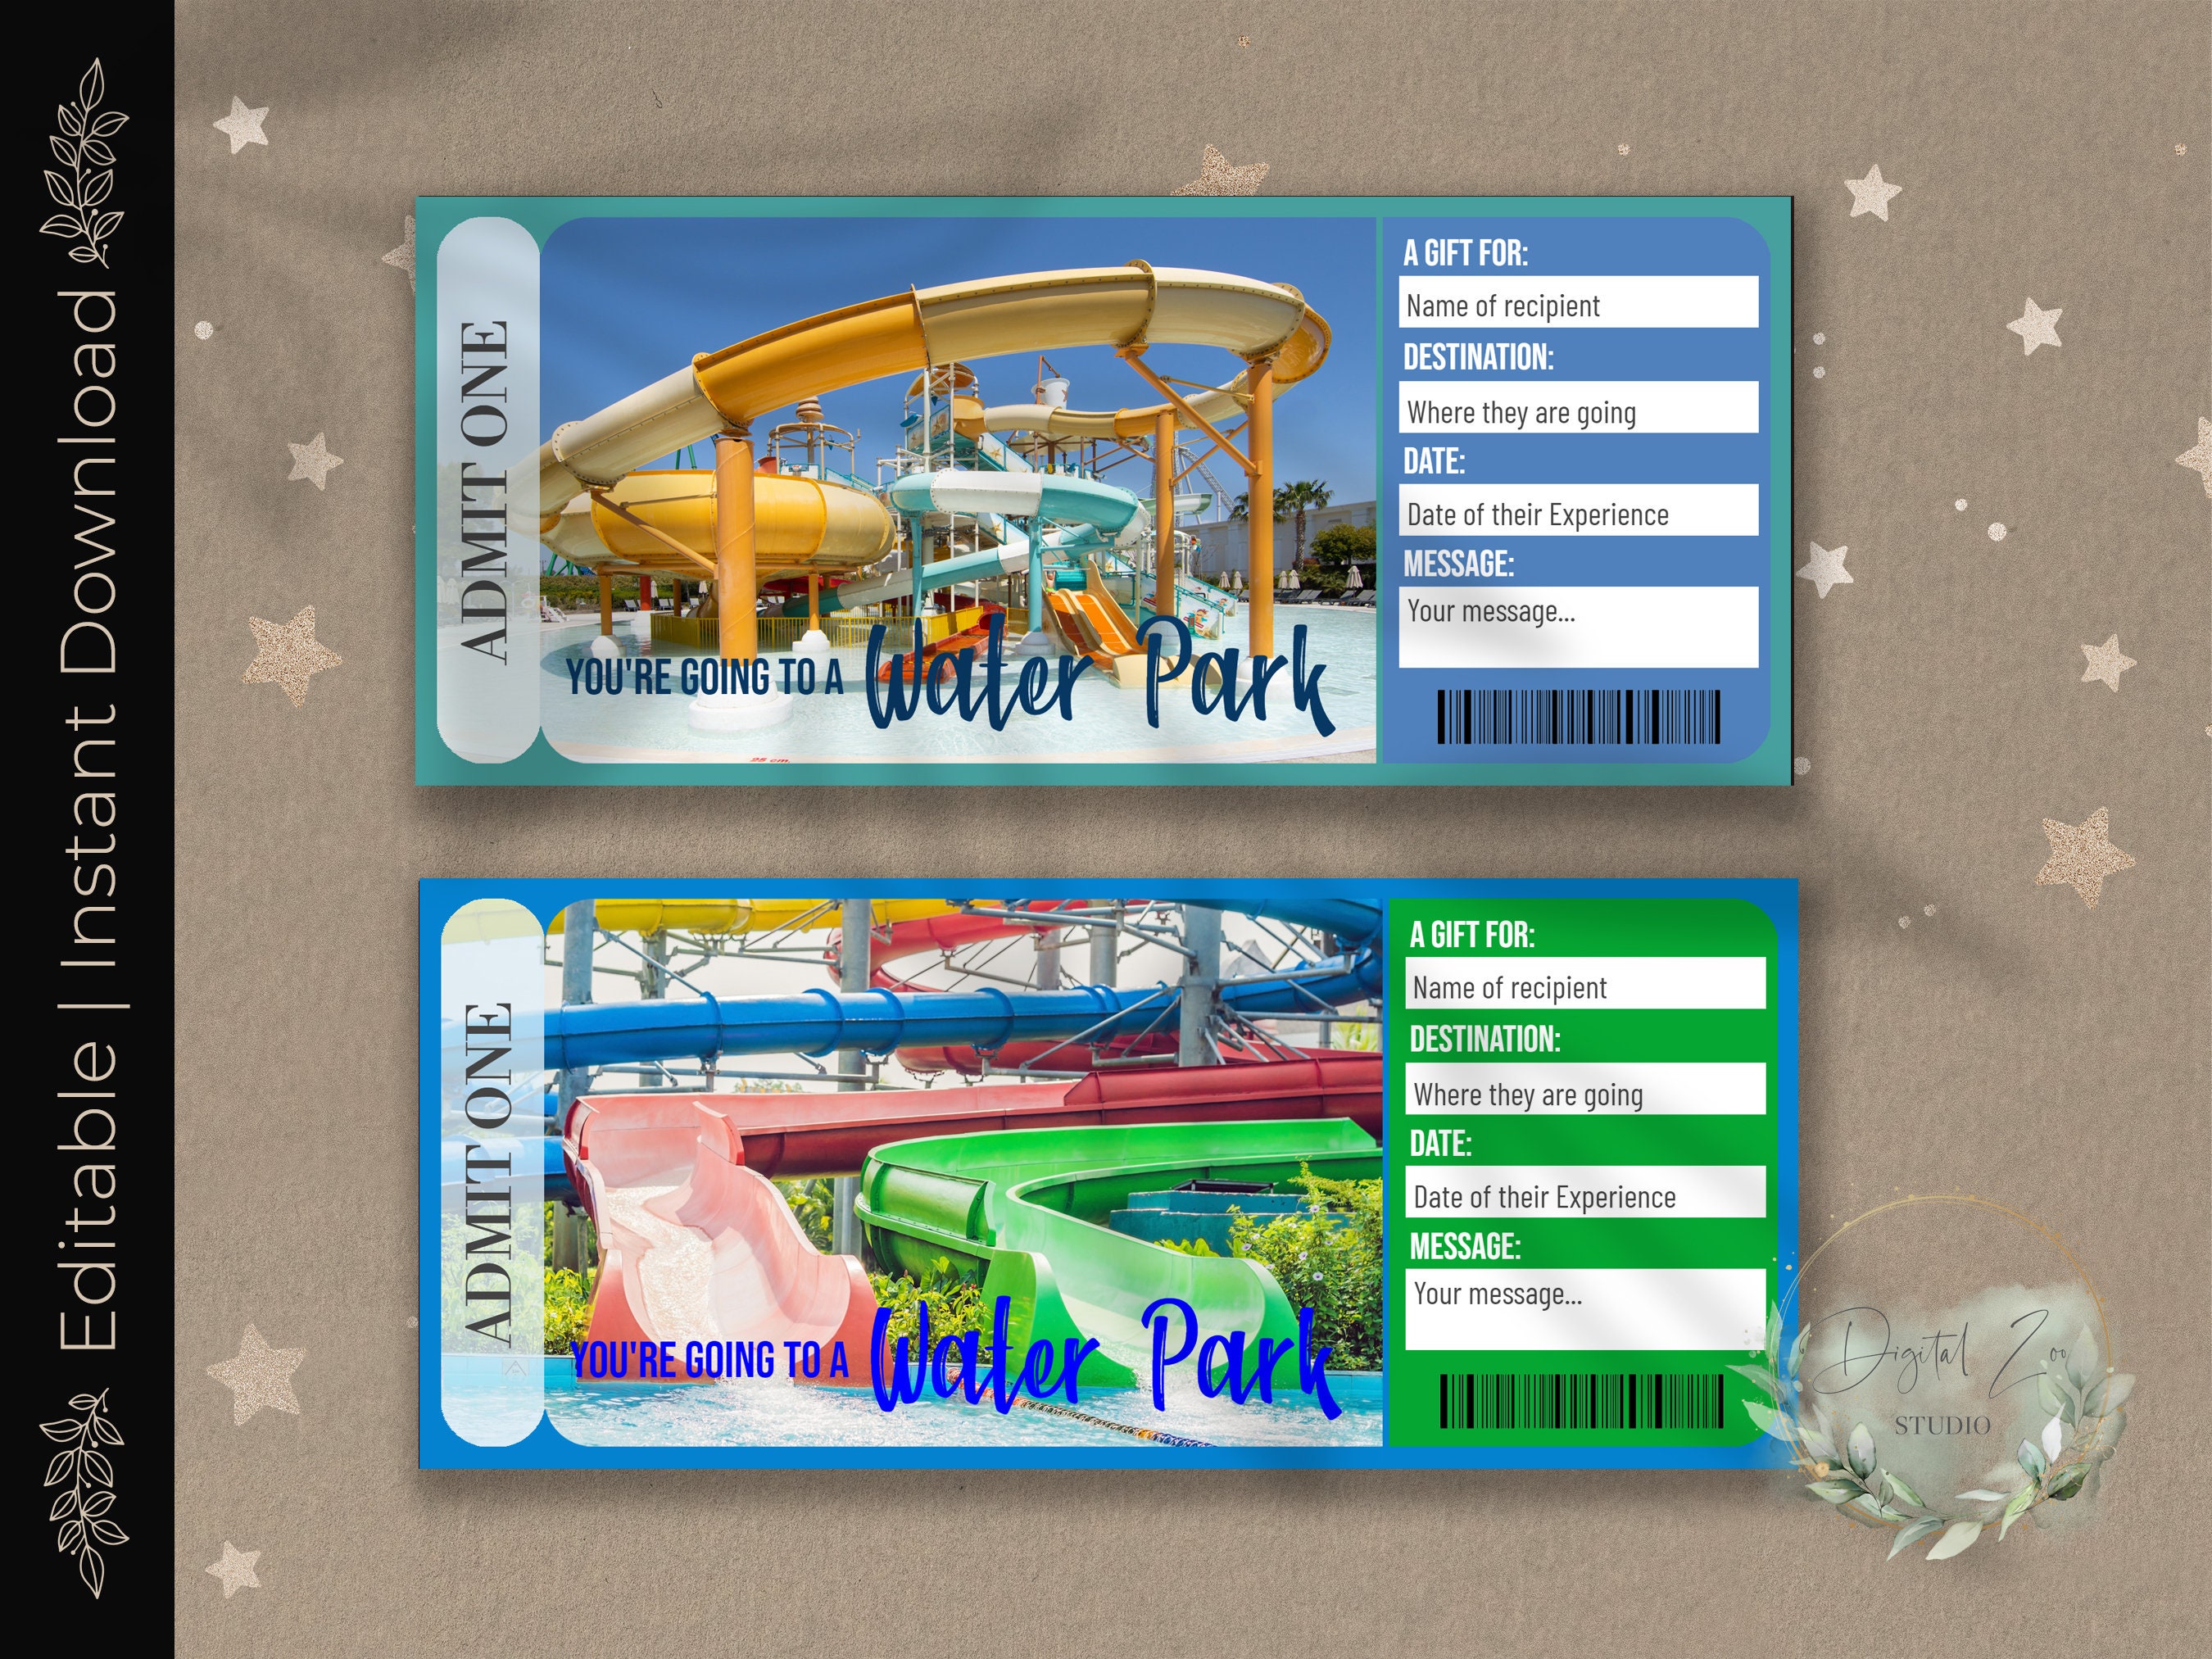 Theme Park Water Park Ticketing, POS,…